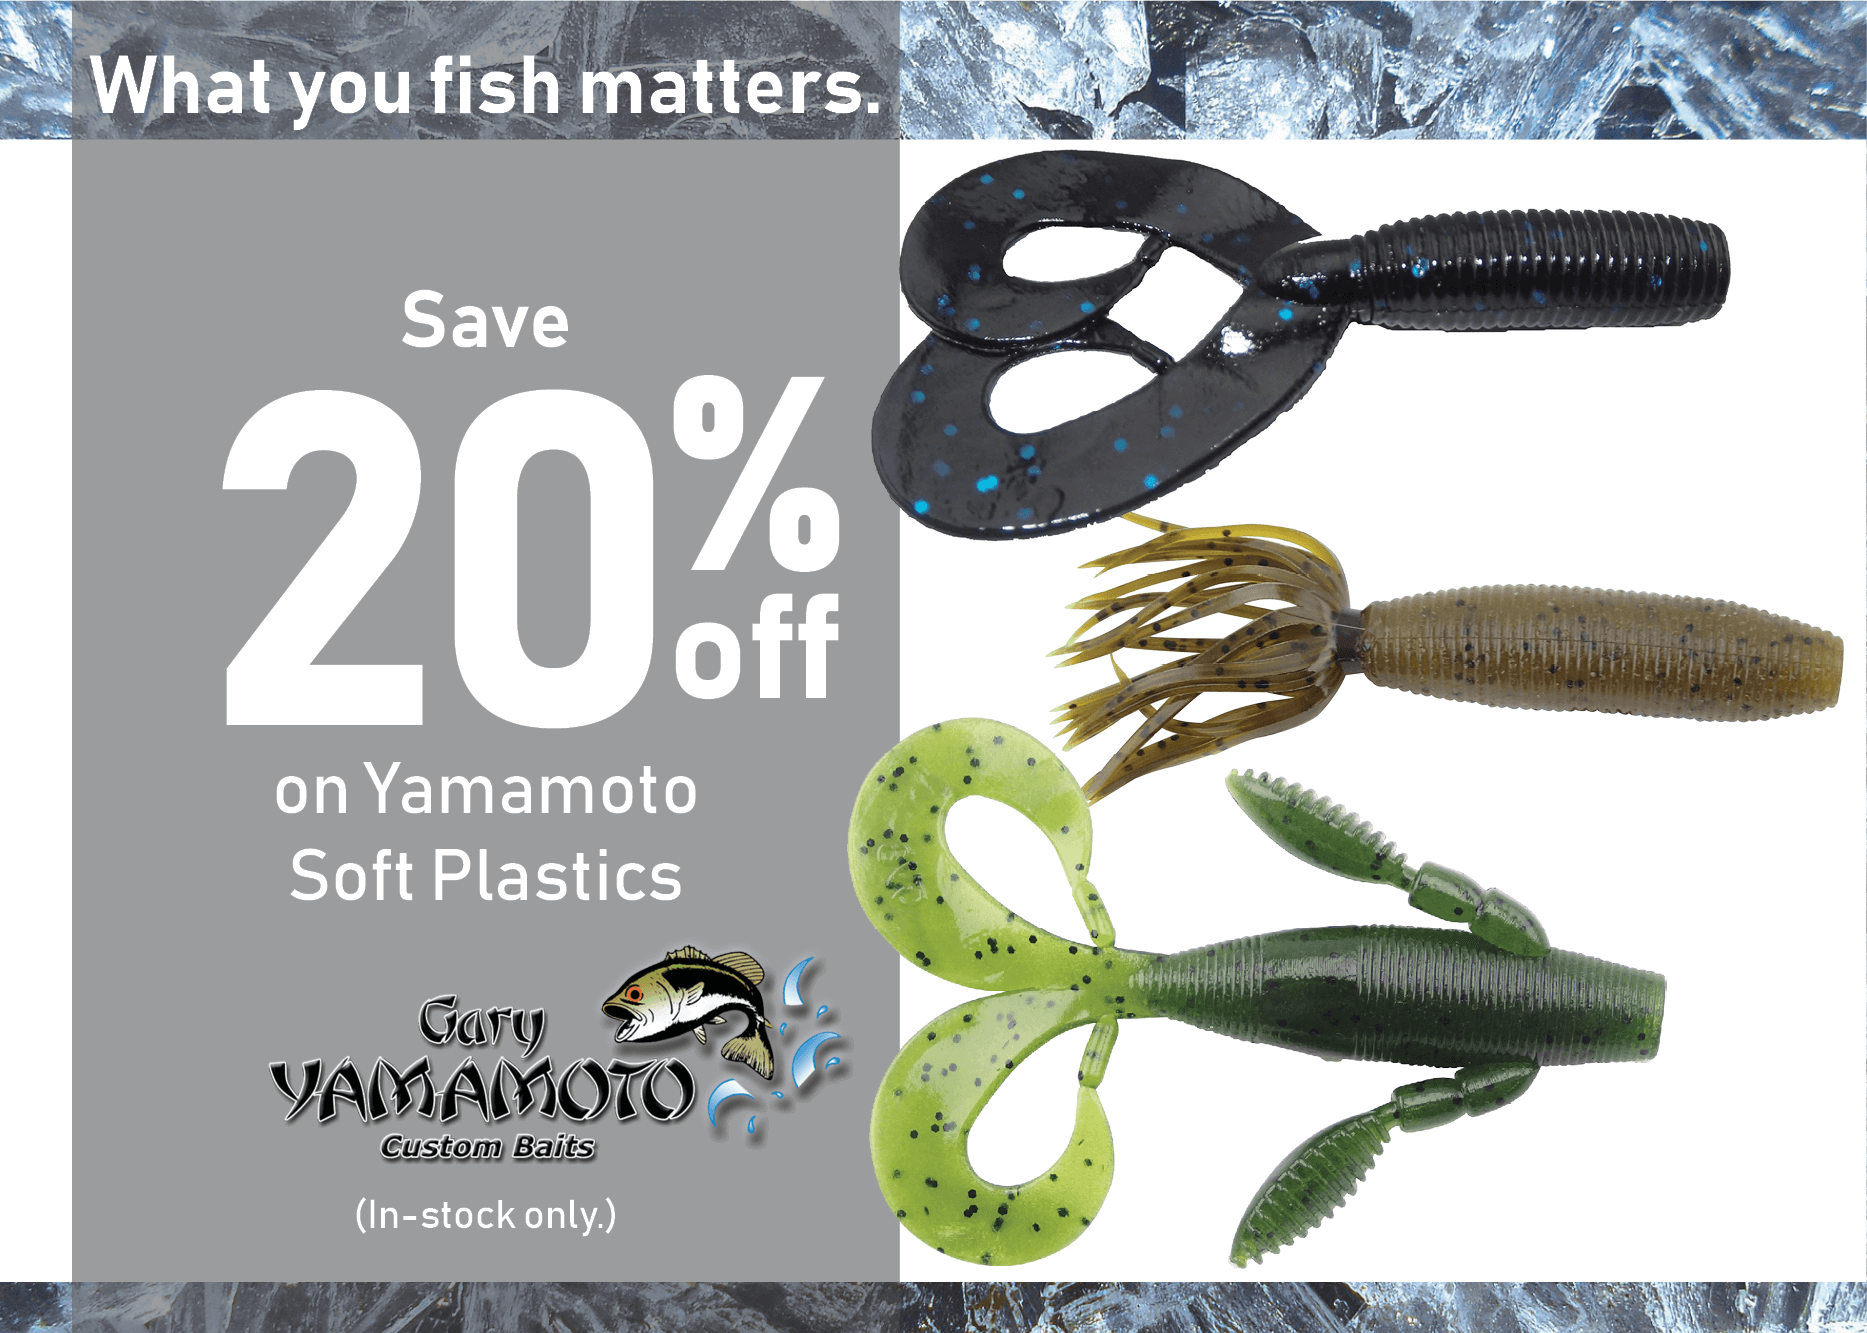 Save 20% on Yamamoto Soft Plastics